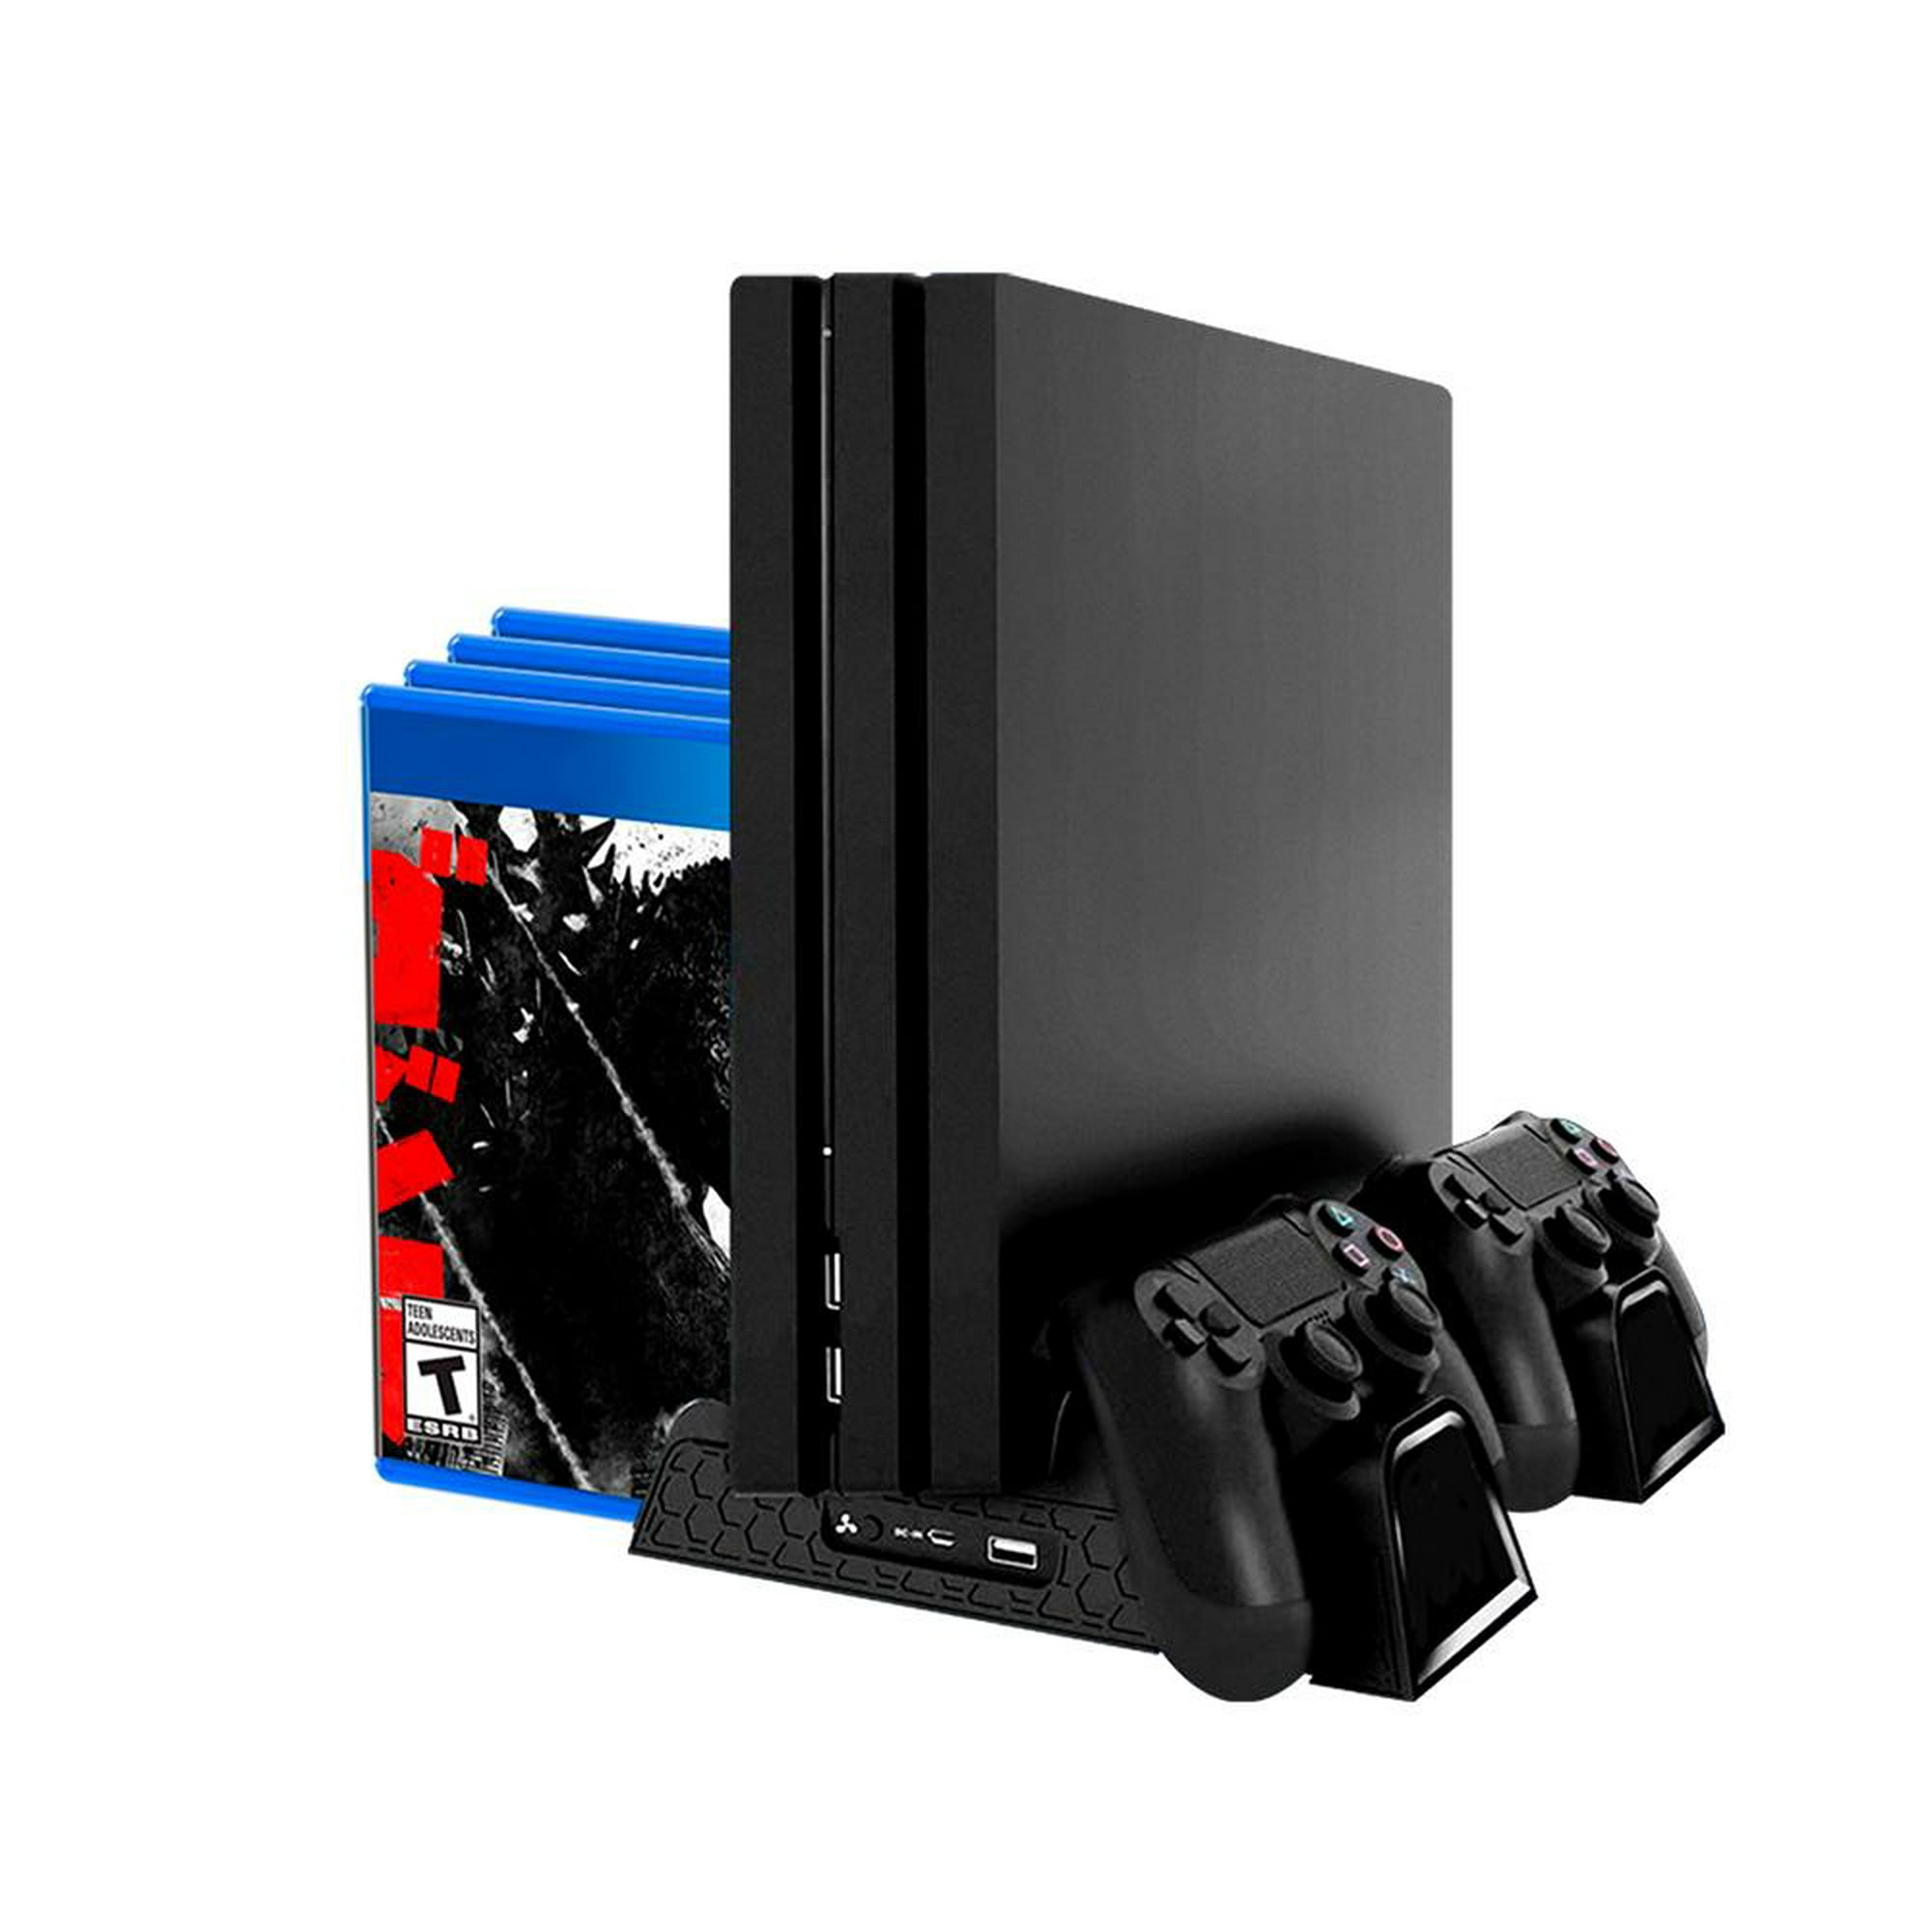  Soporte vertical 2 en 1 para PS4 Slim/PS4 Pro/Regular Playstation  4, soporte vertical de consola de juegos profesional duradero con buen  rendimiento. Fácil de instalar : Videojuegos